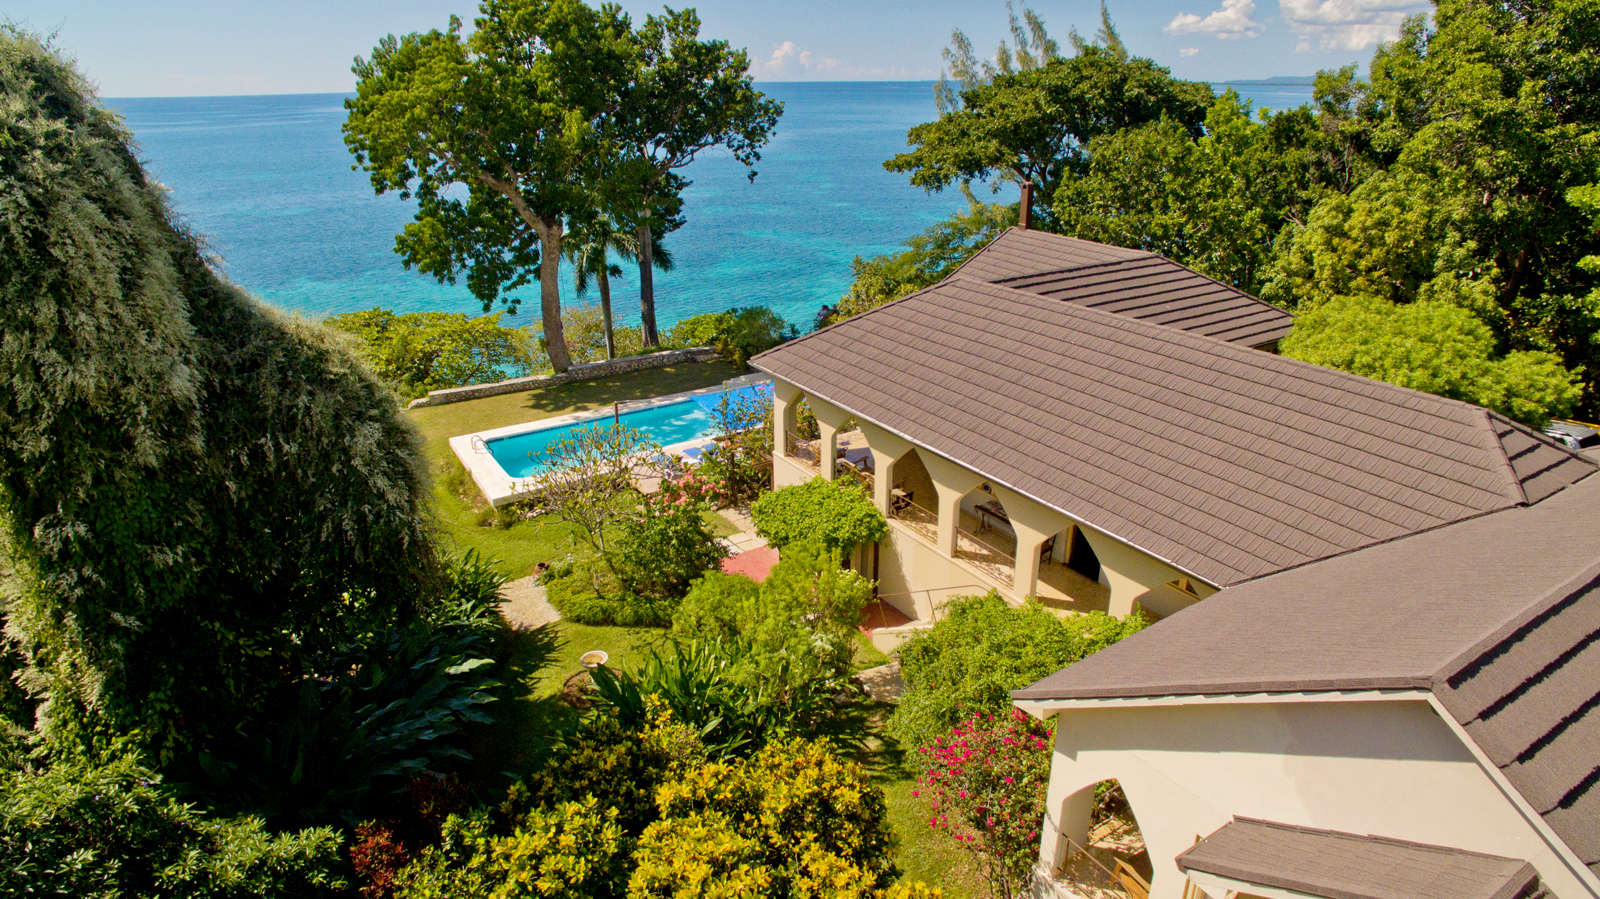 Luxury villa overlooking ocean